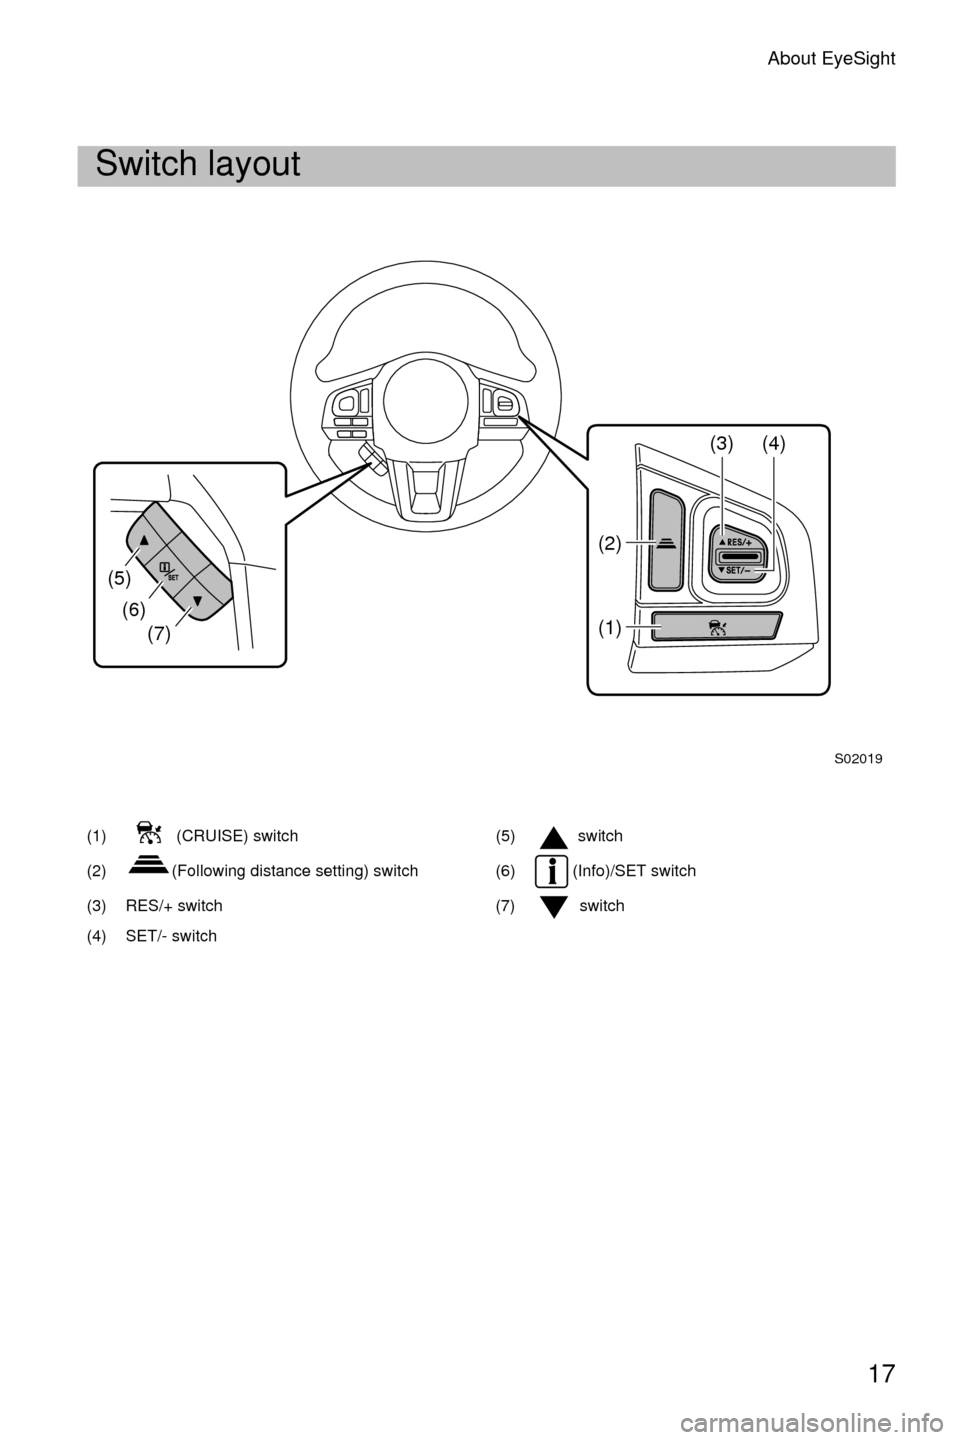 SUBARU CROSSTREK 2016 1.G Driving Assist Manual About EyeSight
17
Switch layout
(1)  (CRUISE) switch(5)  switch
(2) (Following distance setting) switch (6)  (Info)/SET switch
(3) RES/+ switch (7) switch
(4) SET/- switch
S02019
(5) (6) (7)
(2) (3) (